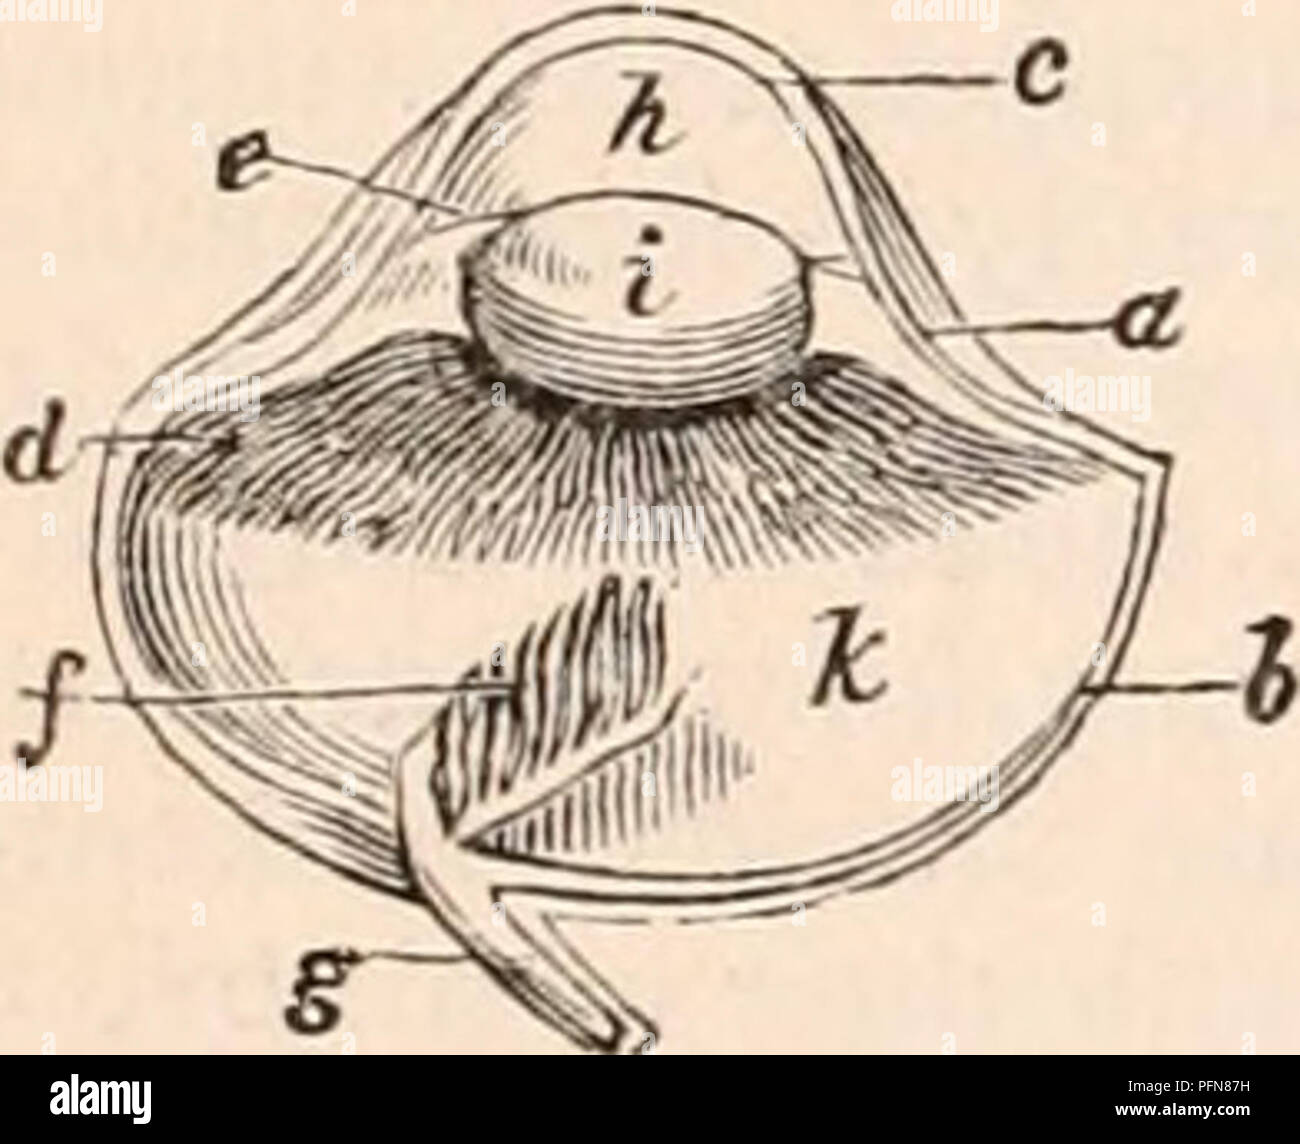 . Die cyclopaedia von Anatomie und Physiologie. Anatomie, Physiologie, Zoologie. 304 AVES. Zusammen mit einem haltbaren ligamentous Substanz, die die Fortsetzung der scle-rotic zwischen den Kanten, die sich gegenseitig überlappen. Die Hornhaut besitzt die gleiche Struktur wie in Mammalia, unterscheidet sich aber in Bezug auf die Form. Wenn Sie den hinteren Teil des Auges ist com - durch die Muskeln gedrückt, die körpersäfte sind nach vorne gedrängt und gelenkraum der Hornhaut, die zu dieser Zeit wird viel mehr Prominente in den meisten Vögeln, als es jemals in Mammalia beobachtet; und unter diesen Umständen, das Auge ist in einem Zustand für Perc Stockfoto